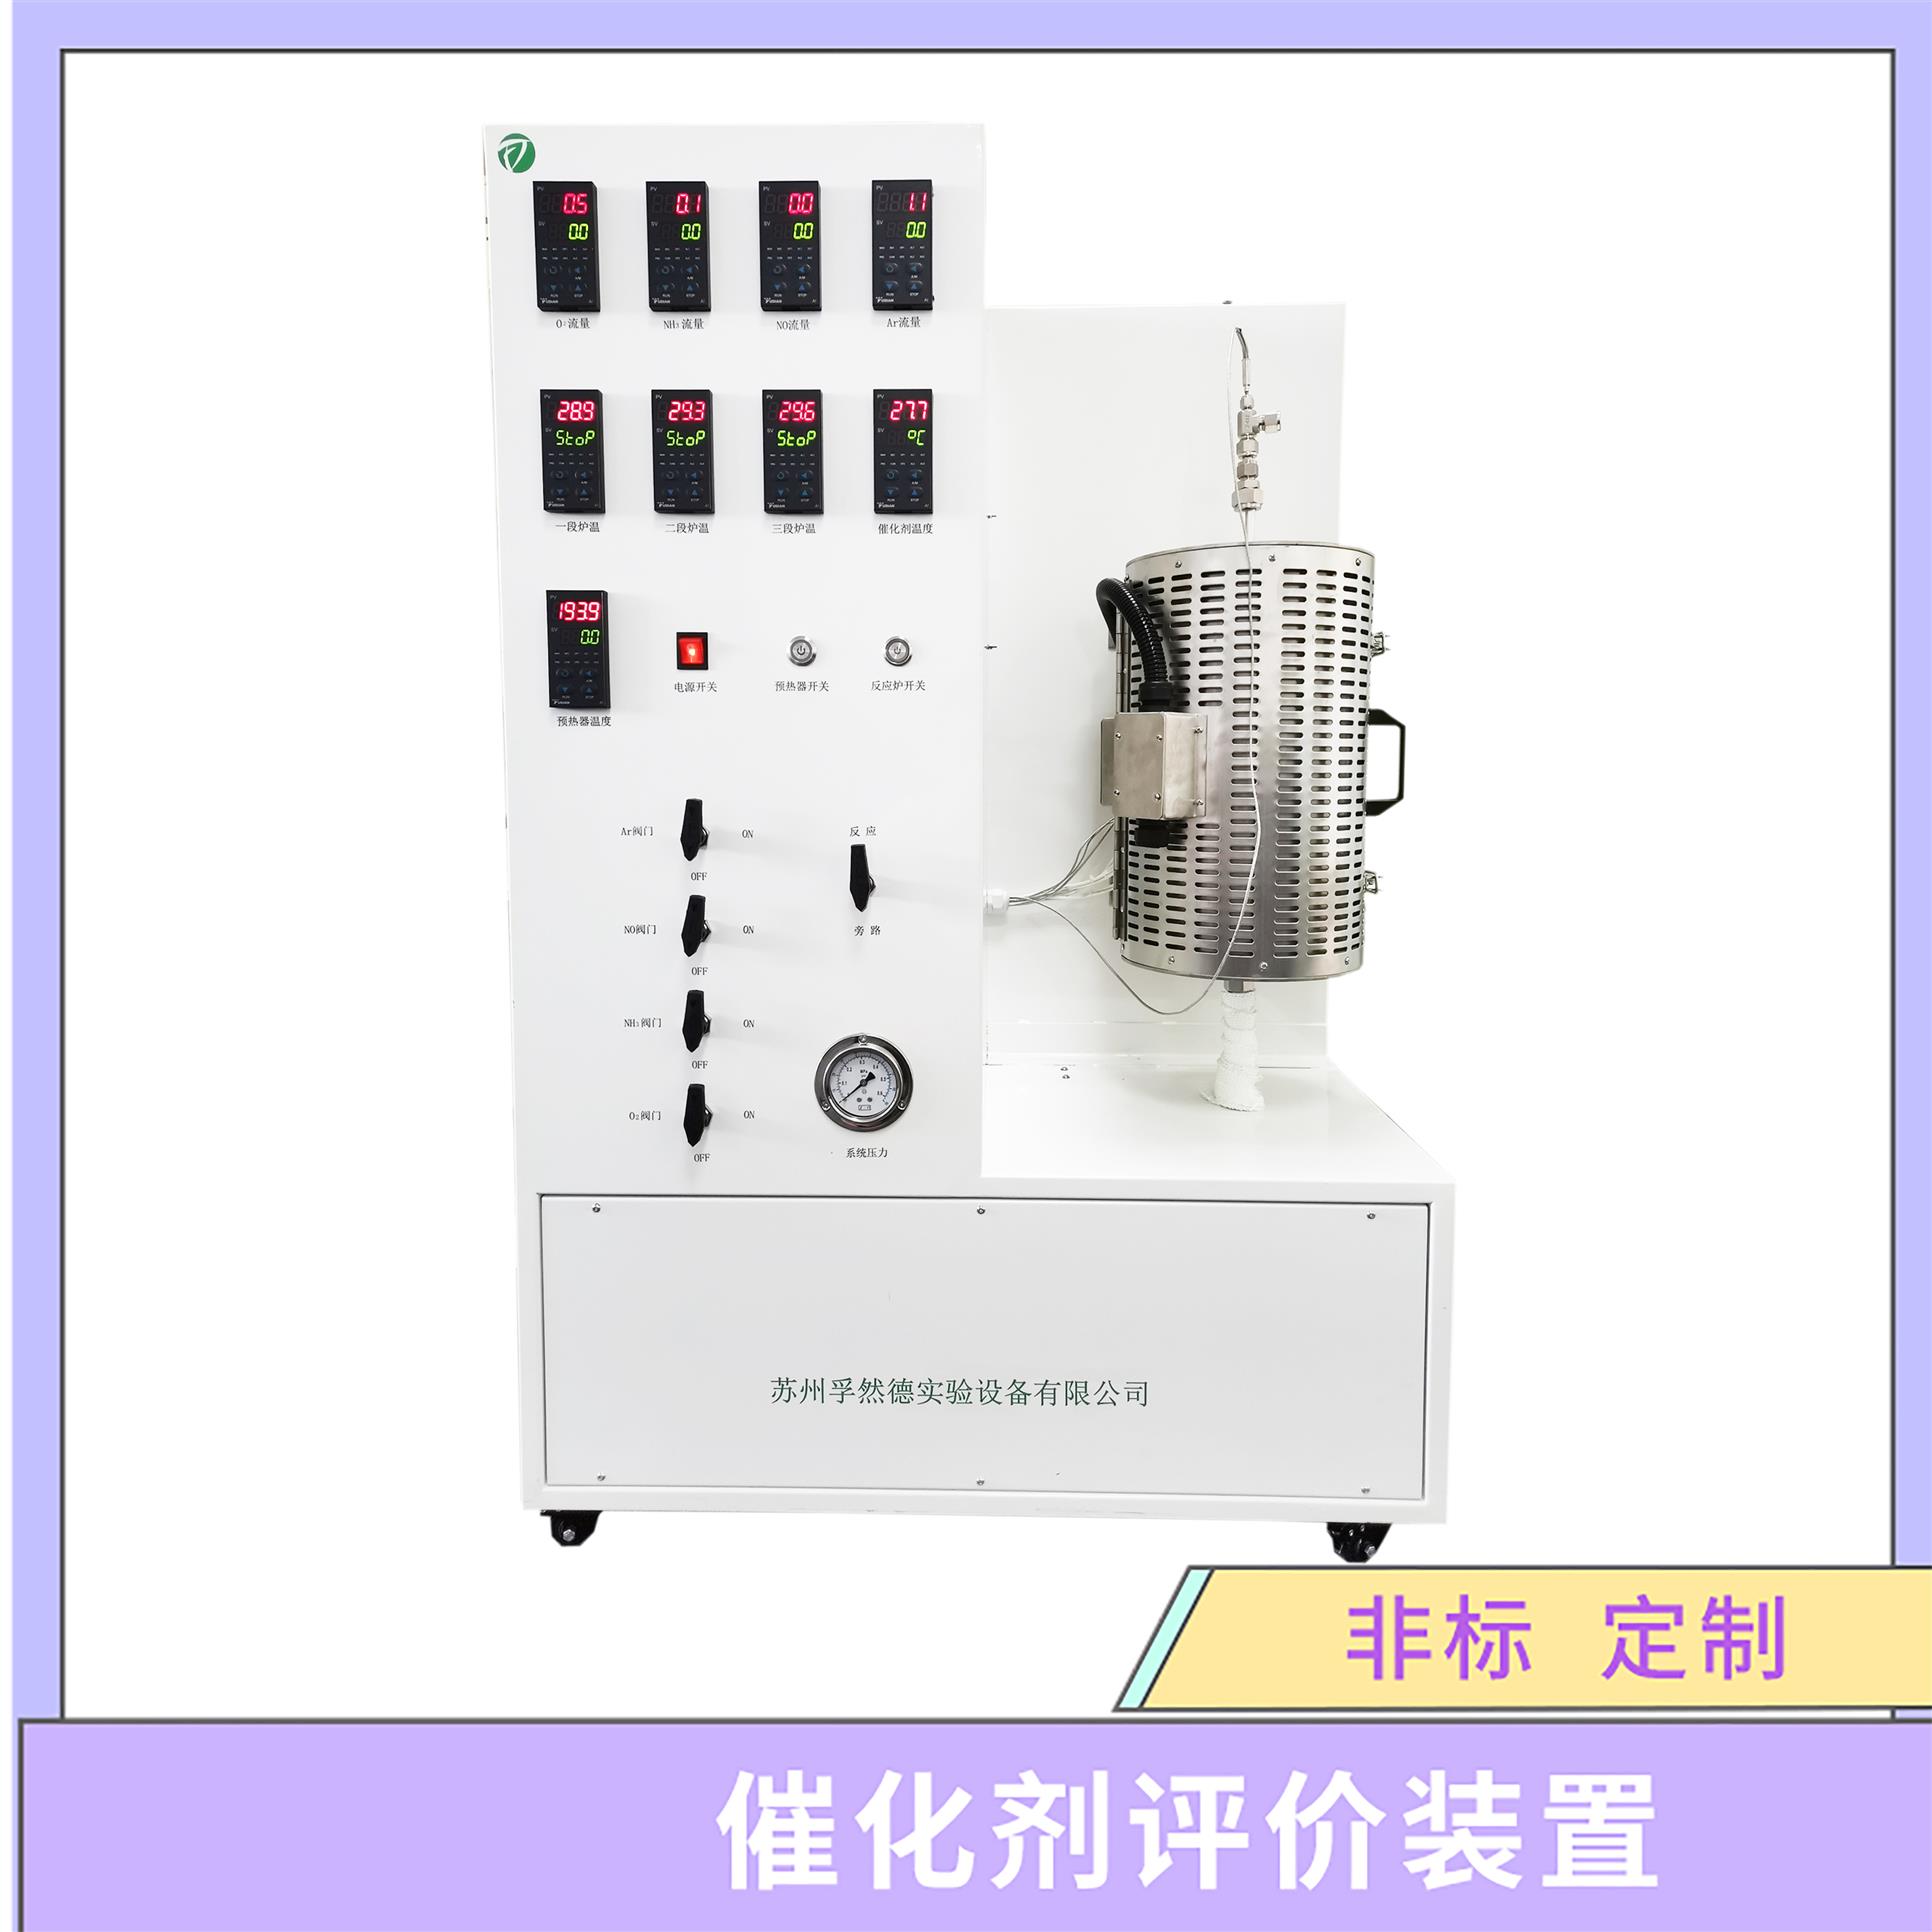 固定床反应器 广州催化剂评价试验装置厂家